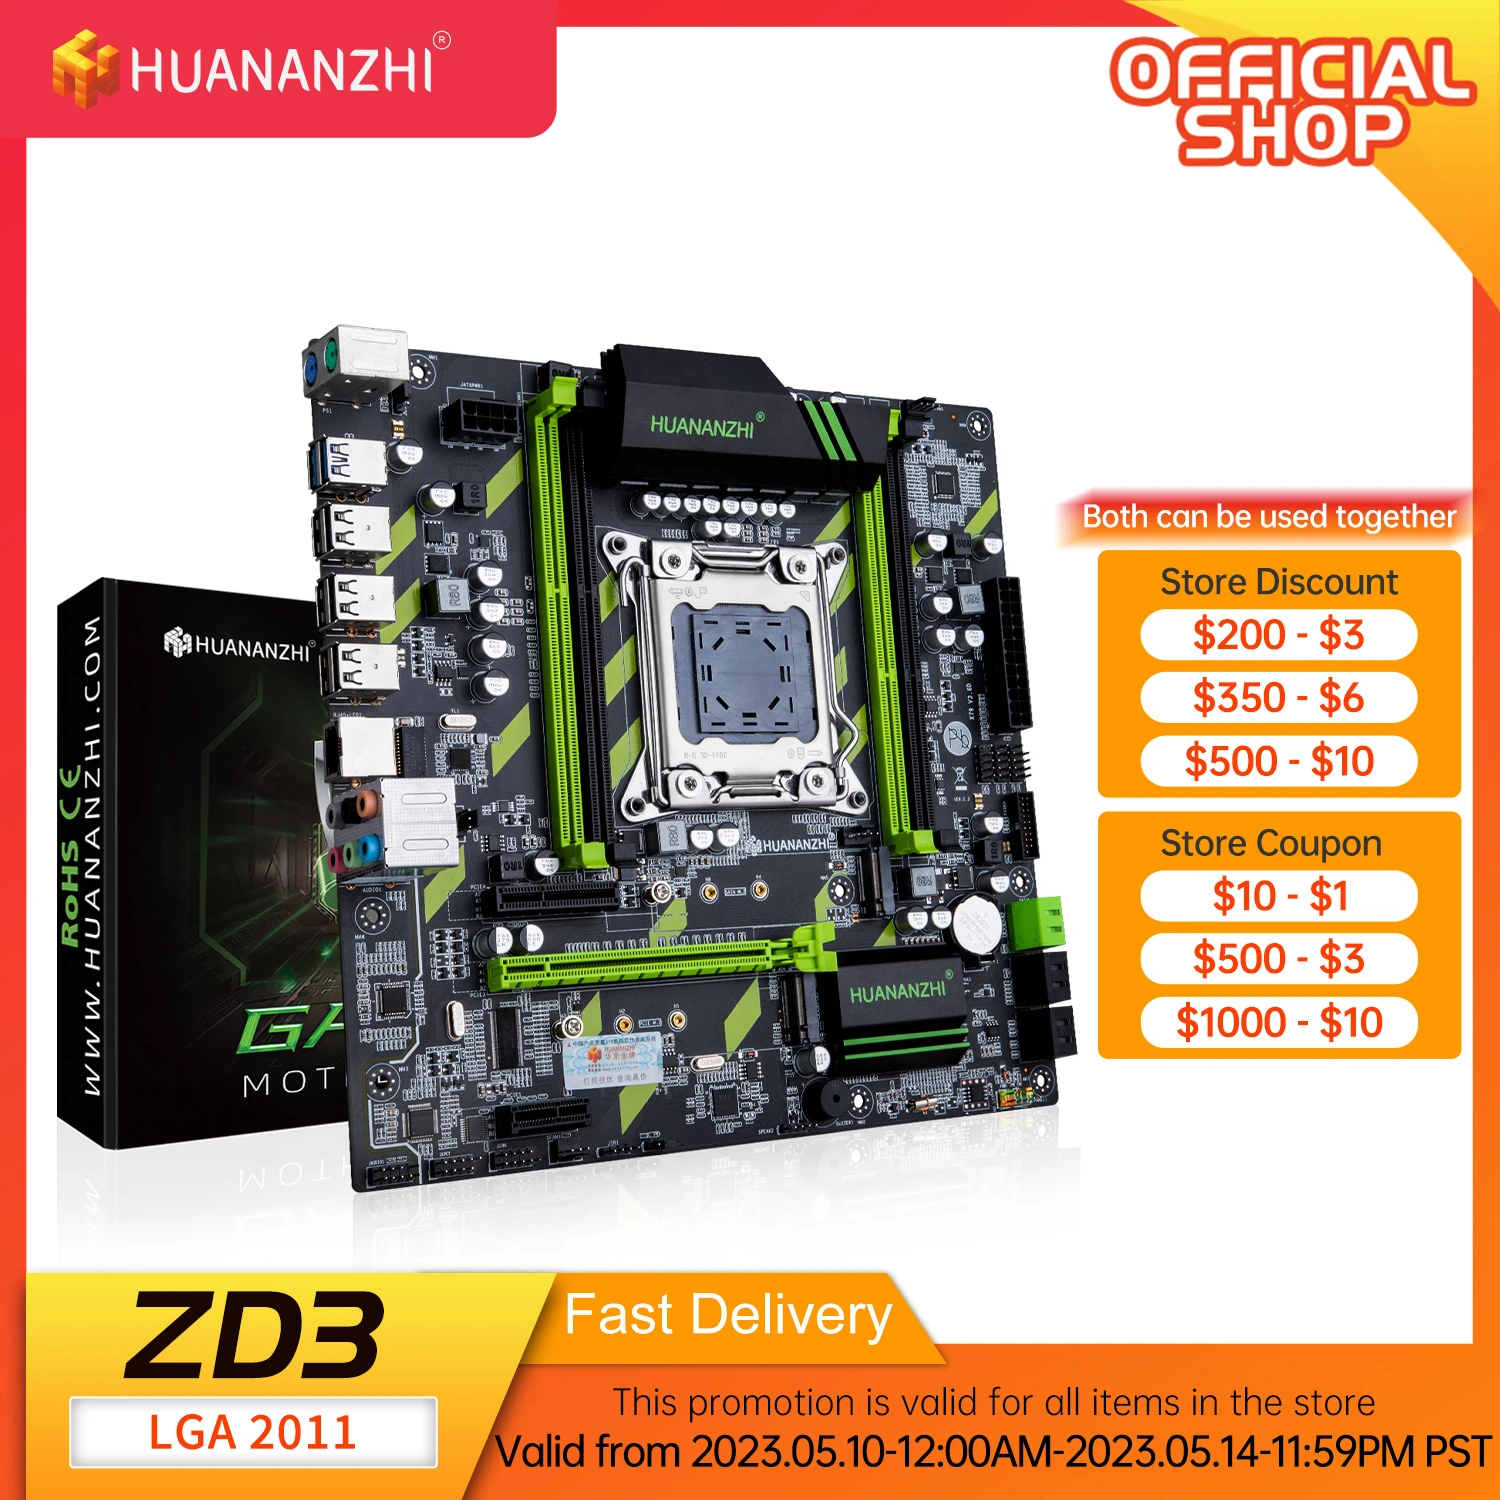 HUANANZHI X79 ZD3 X79 motherboard LGA2011 M-ATX SATA3 USB3.0 PCI-E 16X NVME NGFF M.2 SSD support REG ECC RAM Xeon E5 C2/V1/V2CPU